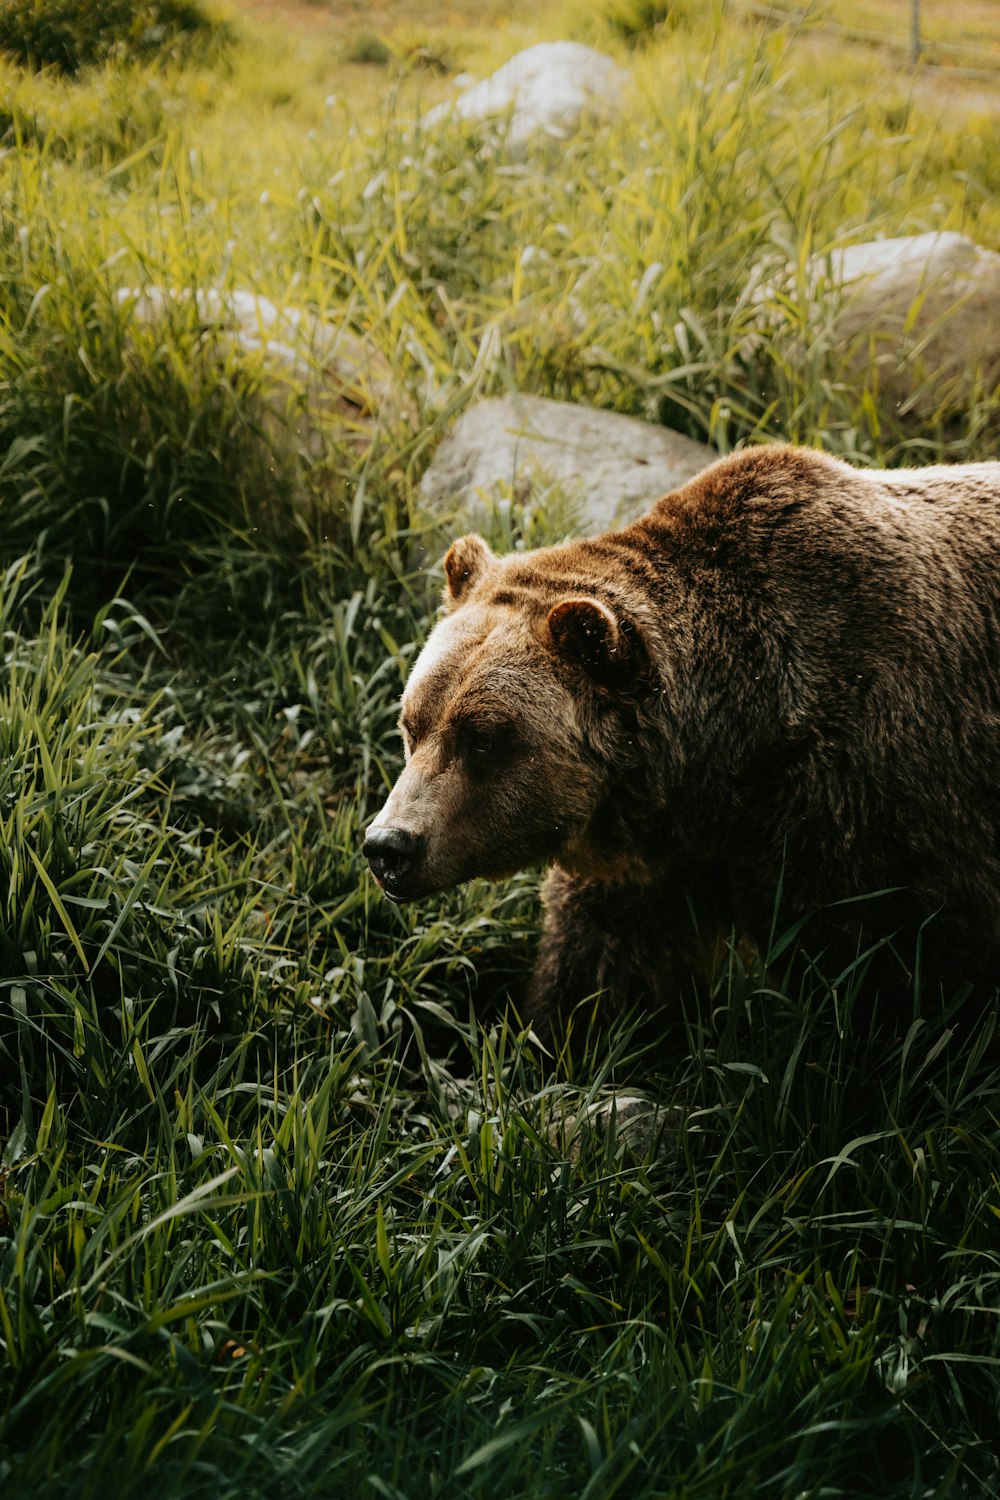 a brown bear walking through a lush green field